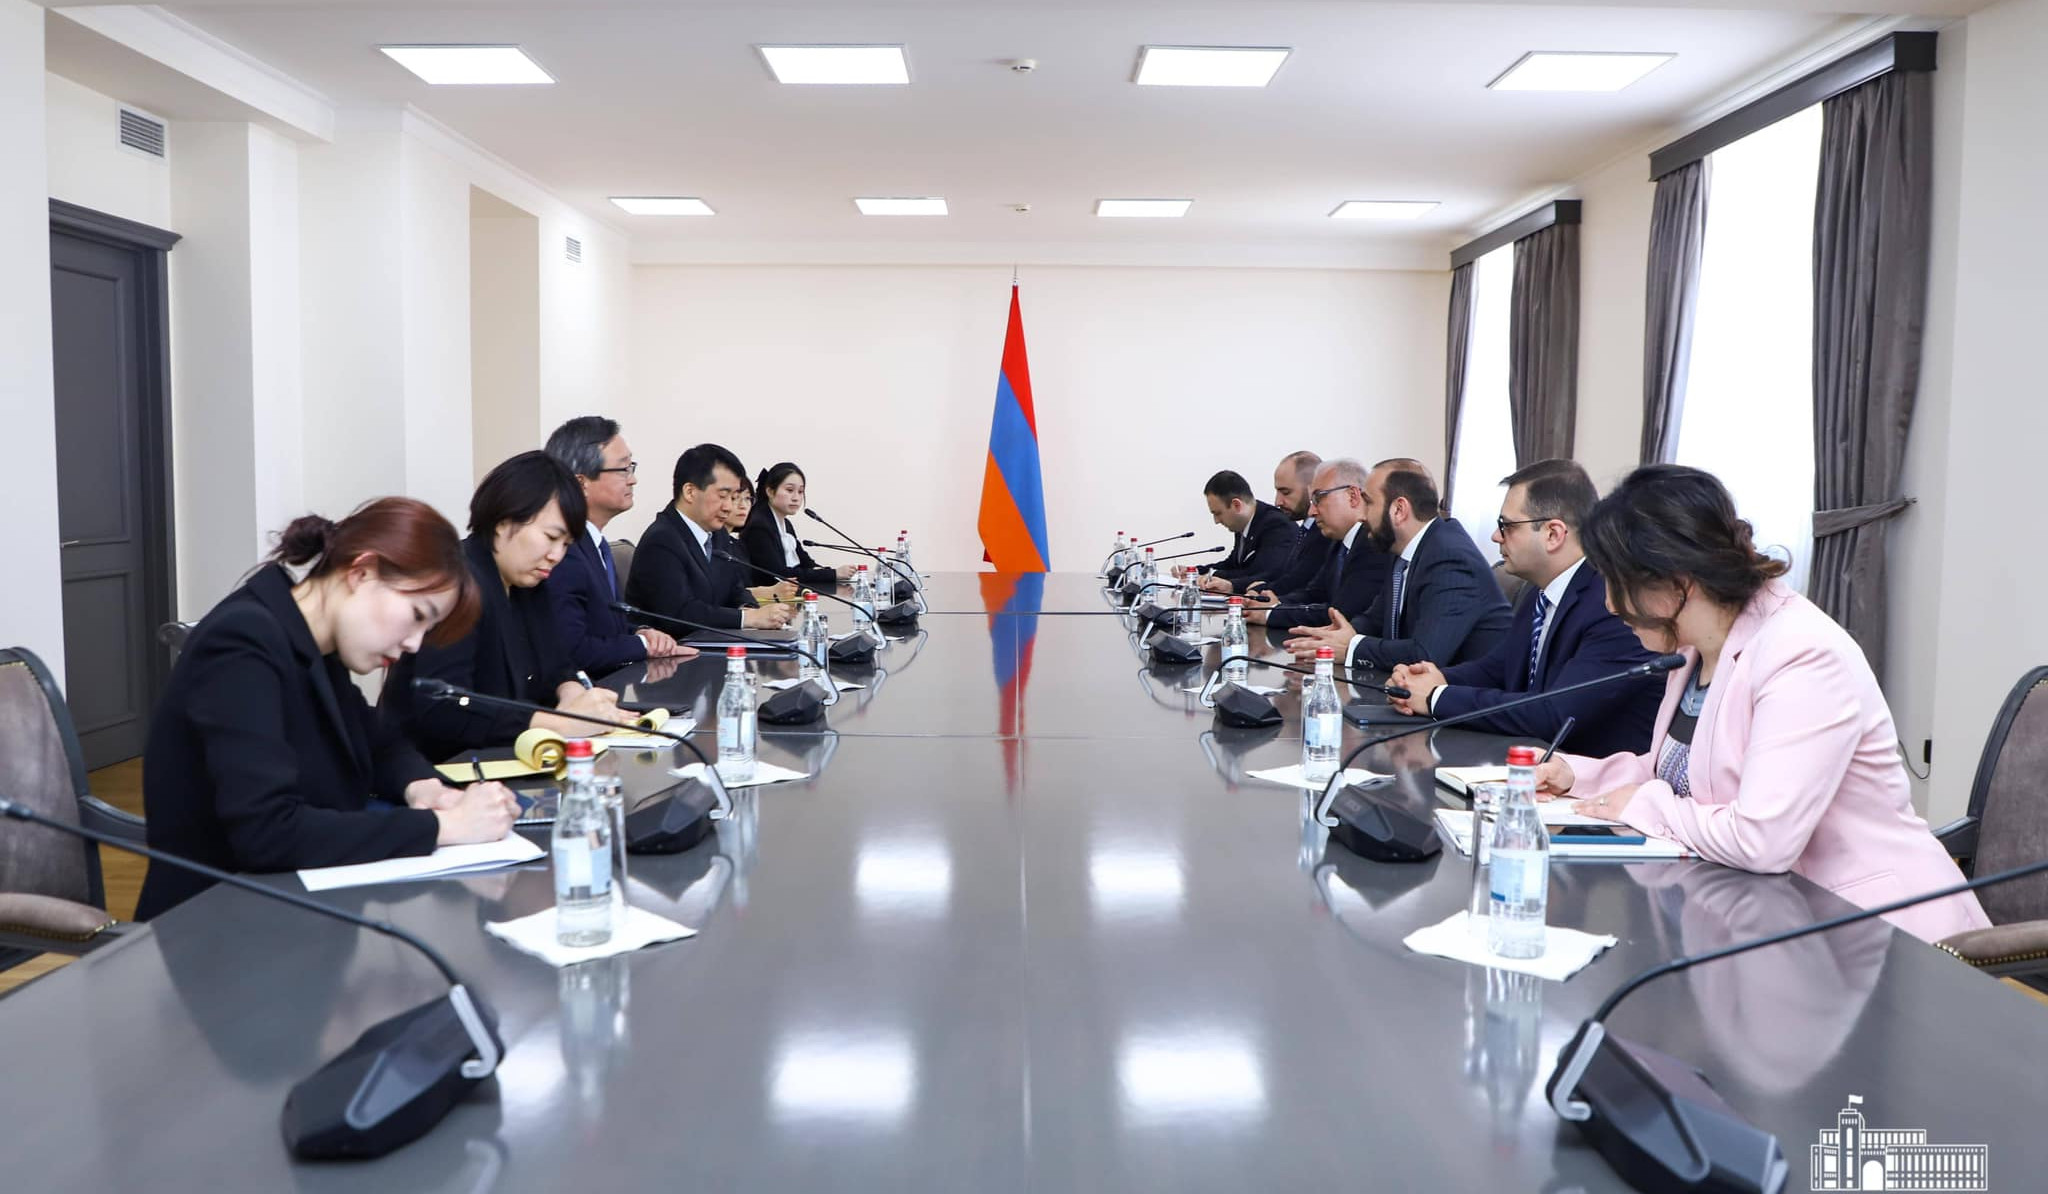 Հայաստանի և Կորեայի ԱԳՆ-ների միջև տեղի են ունեցել քաղաքական խորհրդակցություններ